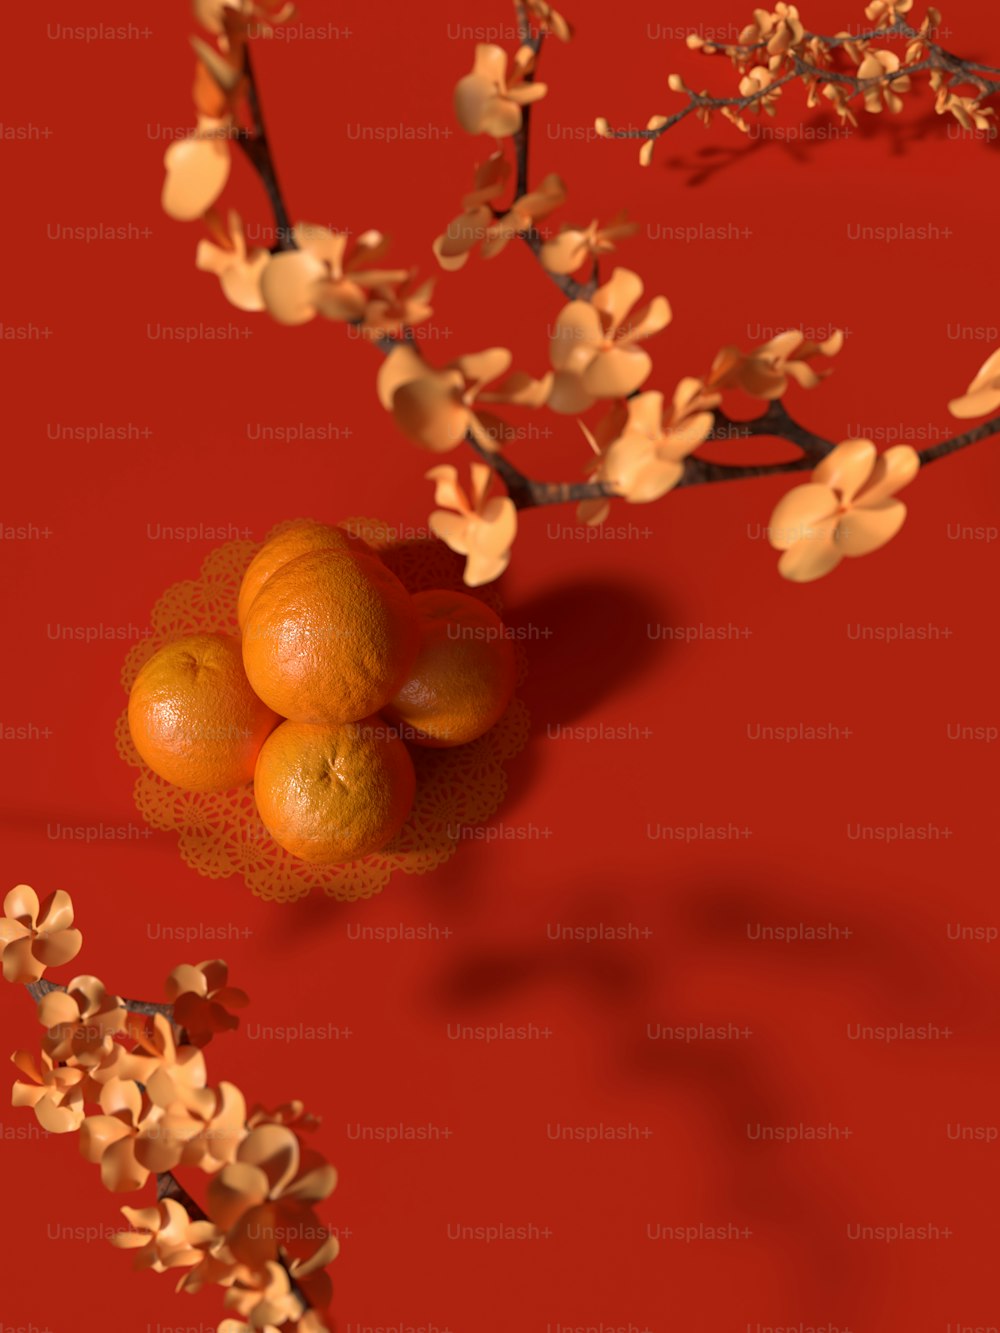 Un montón de naranjas sentadas una encima de la otra